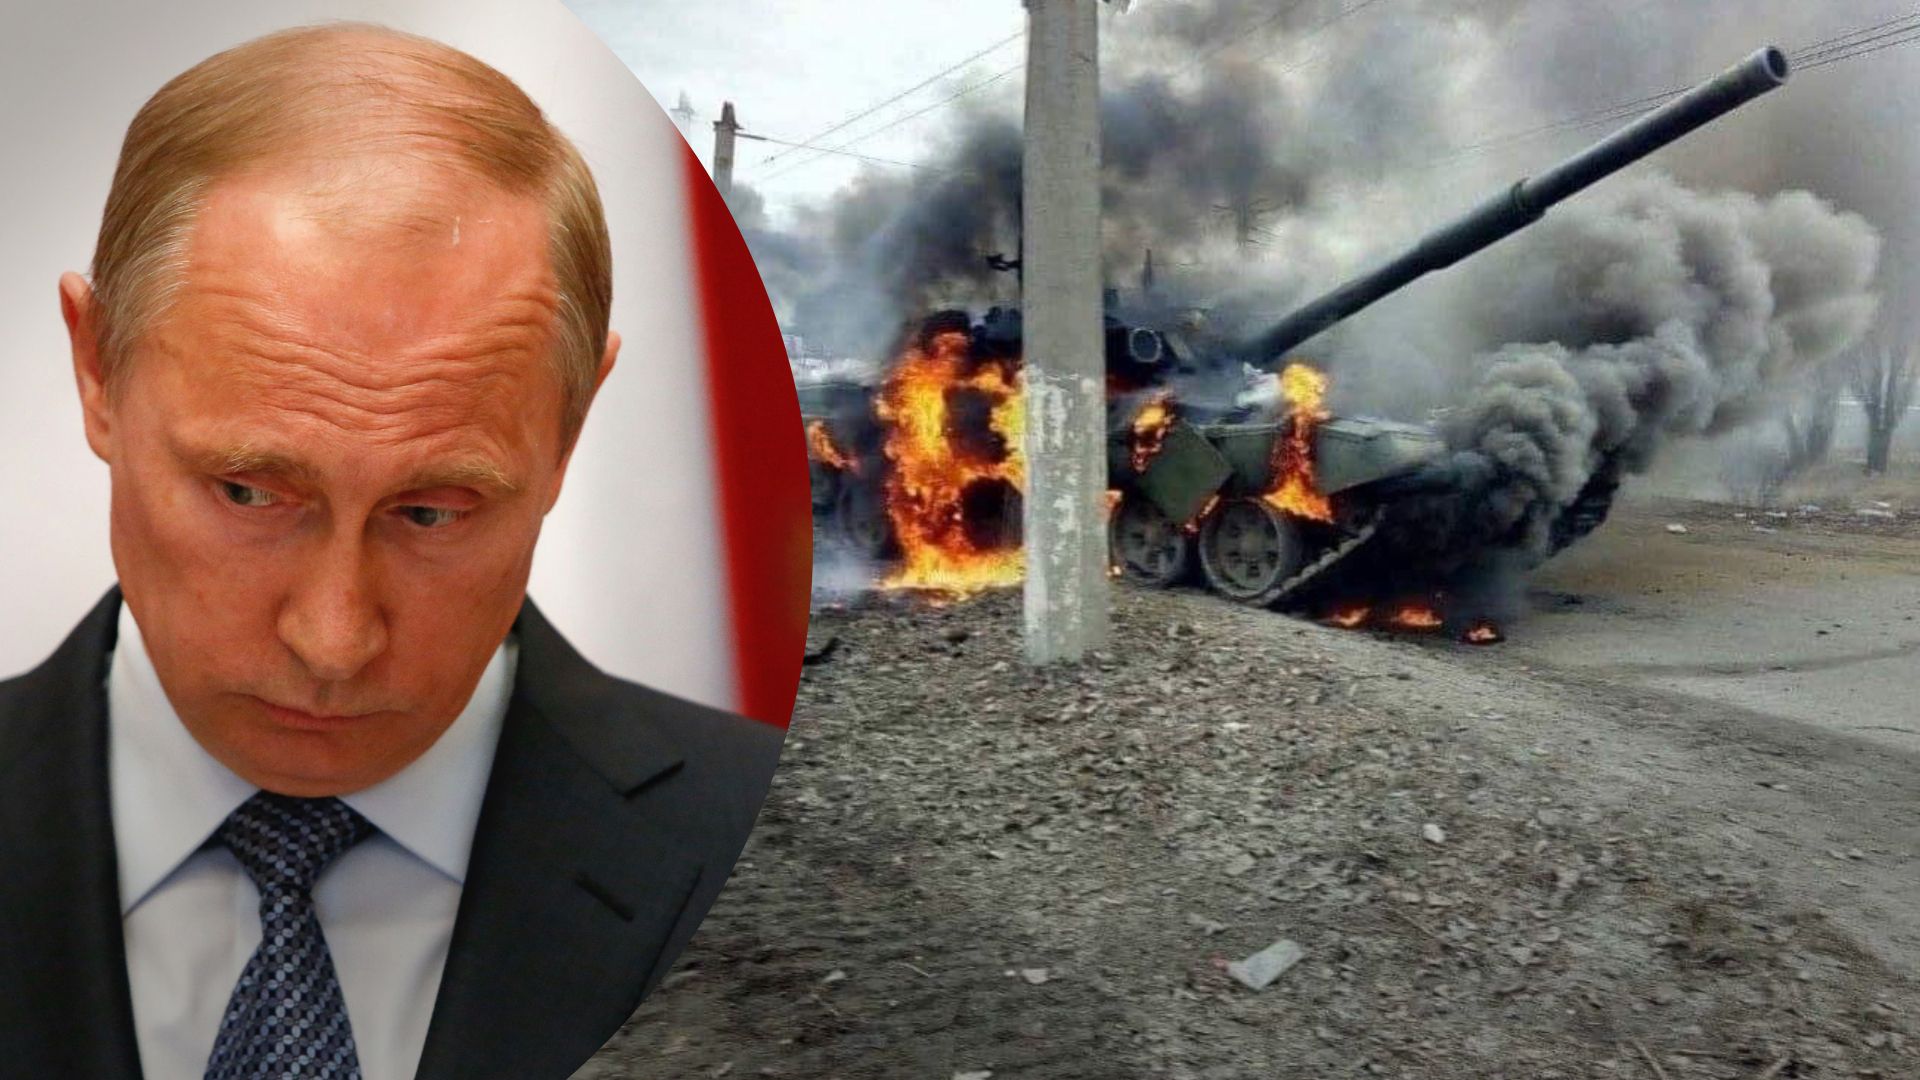 Годовщина полномасштабного вторжения 24 февраля - почему Путин не сделал никакого заявления